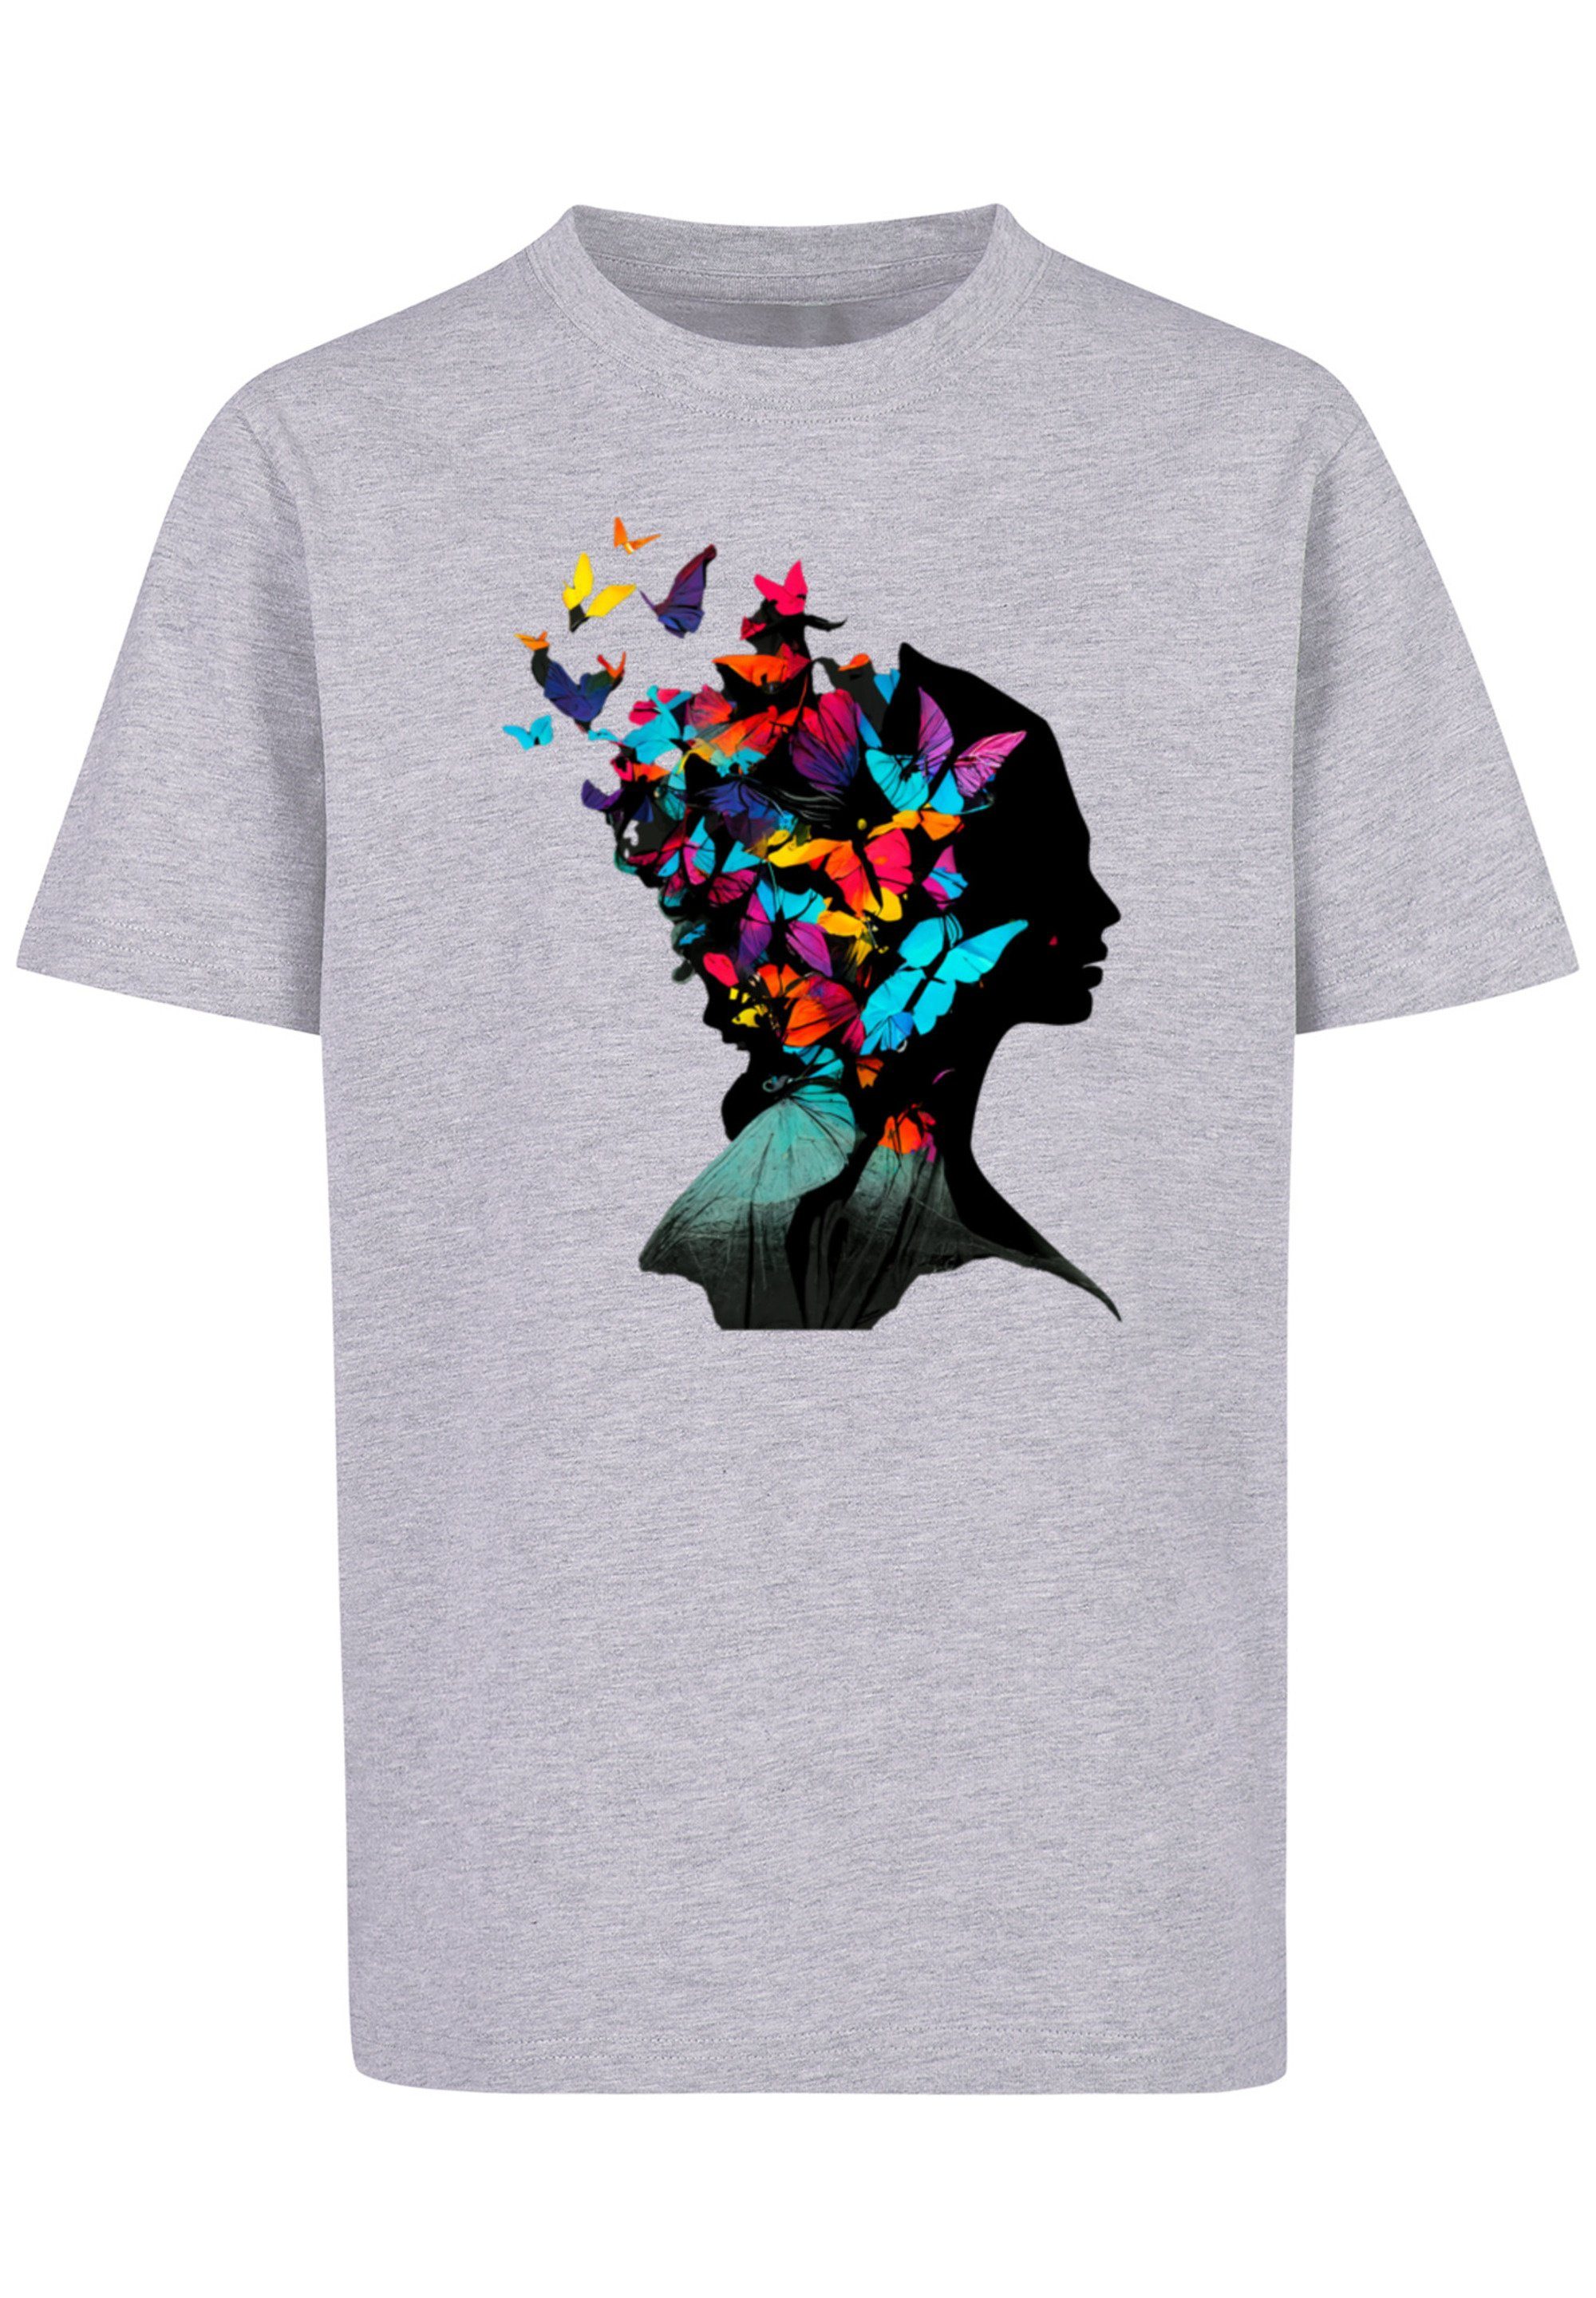 F4NT4STIC T-Shirt Schmetterling Silhouette TEE cm Model 145/152 Print, trägt ist und groß 145 UNISEX Das Größe